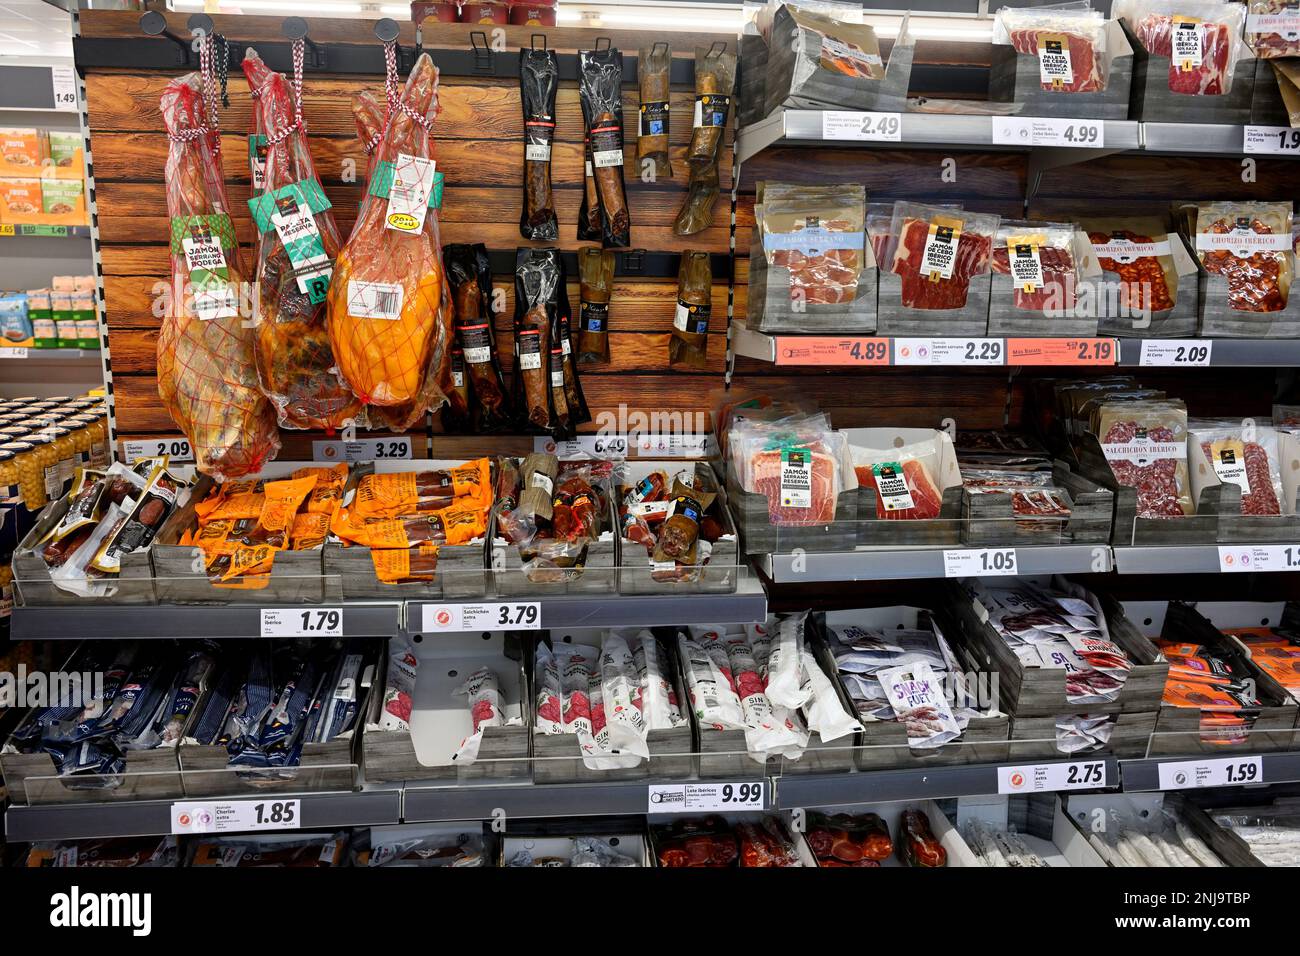 Regale im Supermarkt mit Päckchen haltbar gemachtem Räucherfleisch, Salami, Chorizo, Speck, Schinken, Würstchen Stockfoto